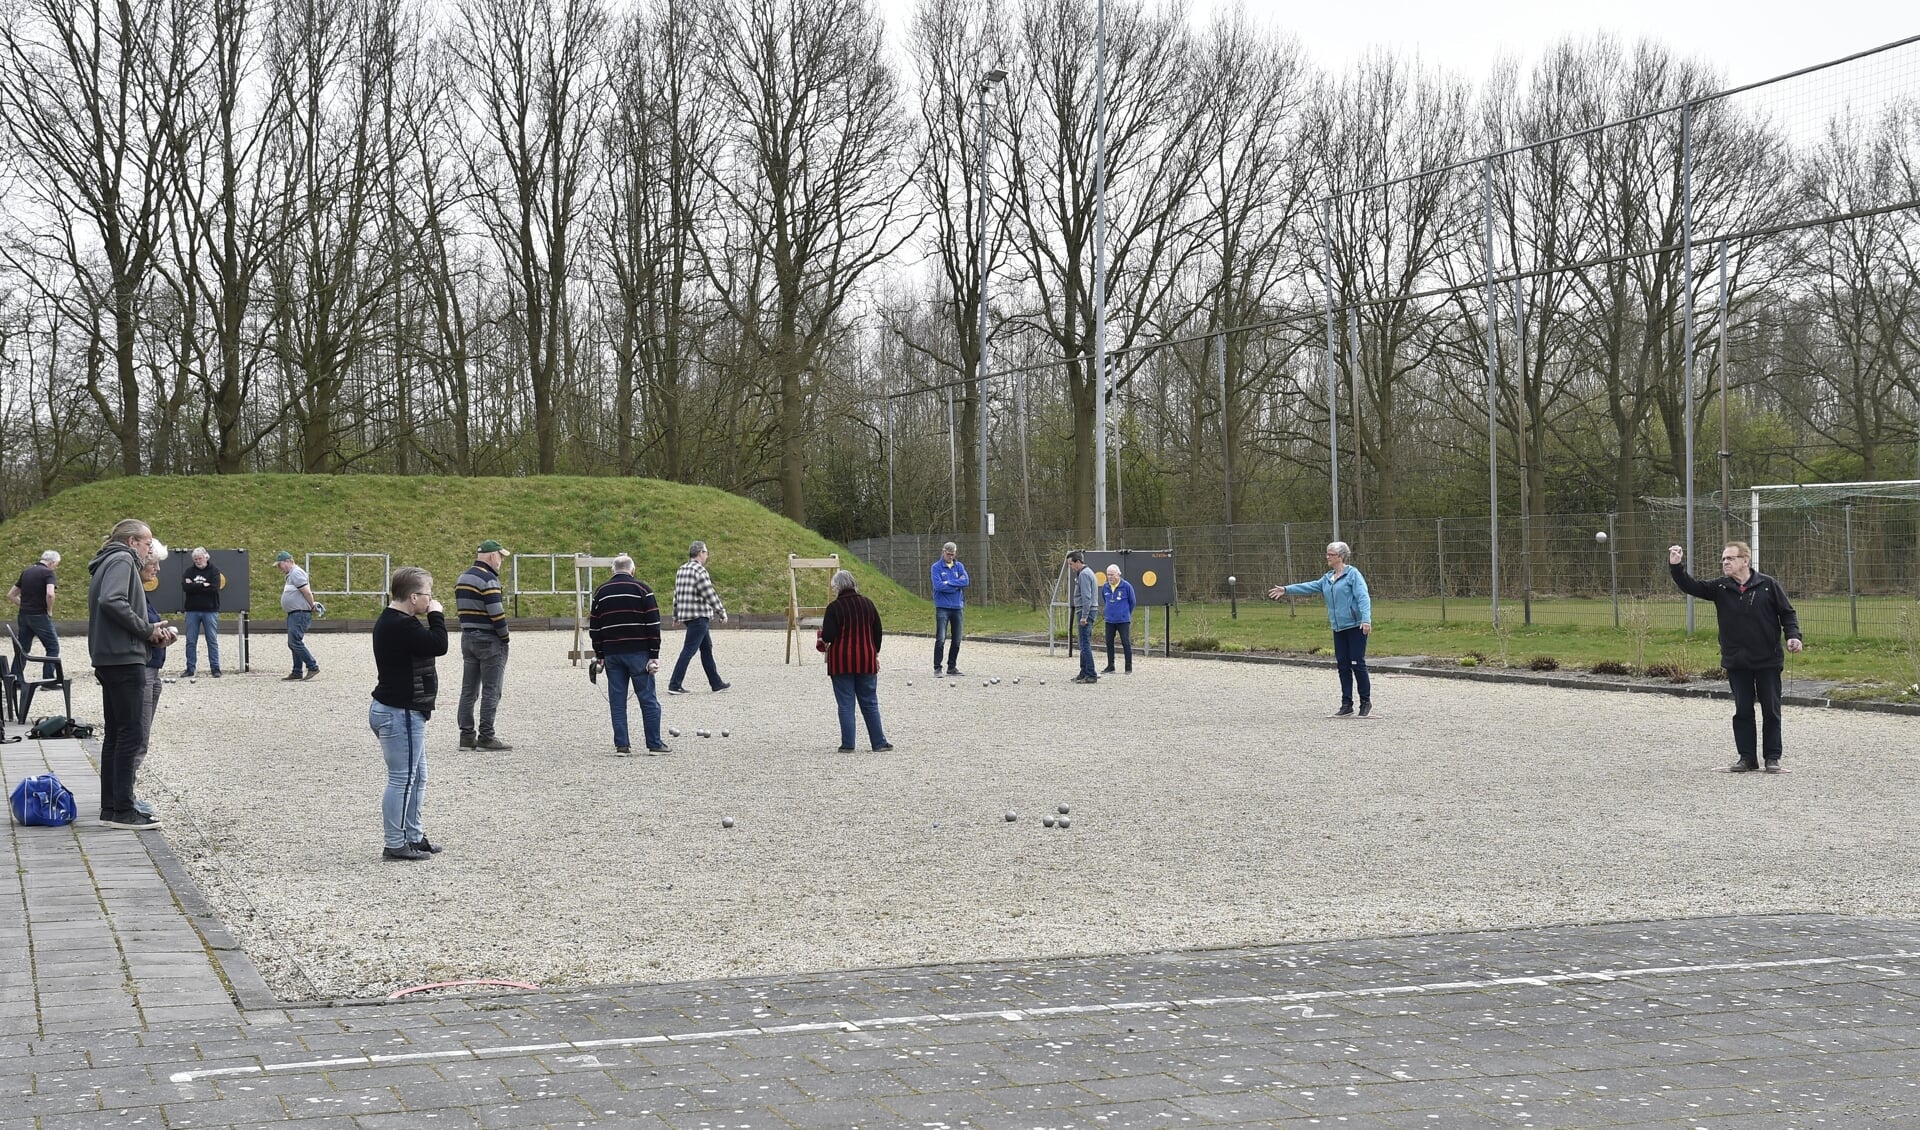 Jeu de boules bij de Gemshoorn aan de Eemweg. Een sport voor iedereen die zowel binnen als buiten beoefend kan worden.